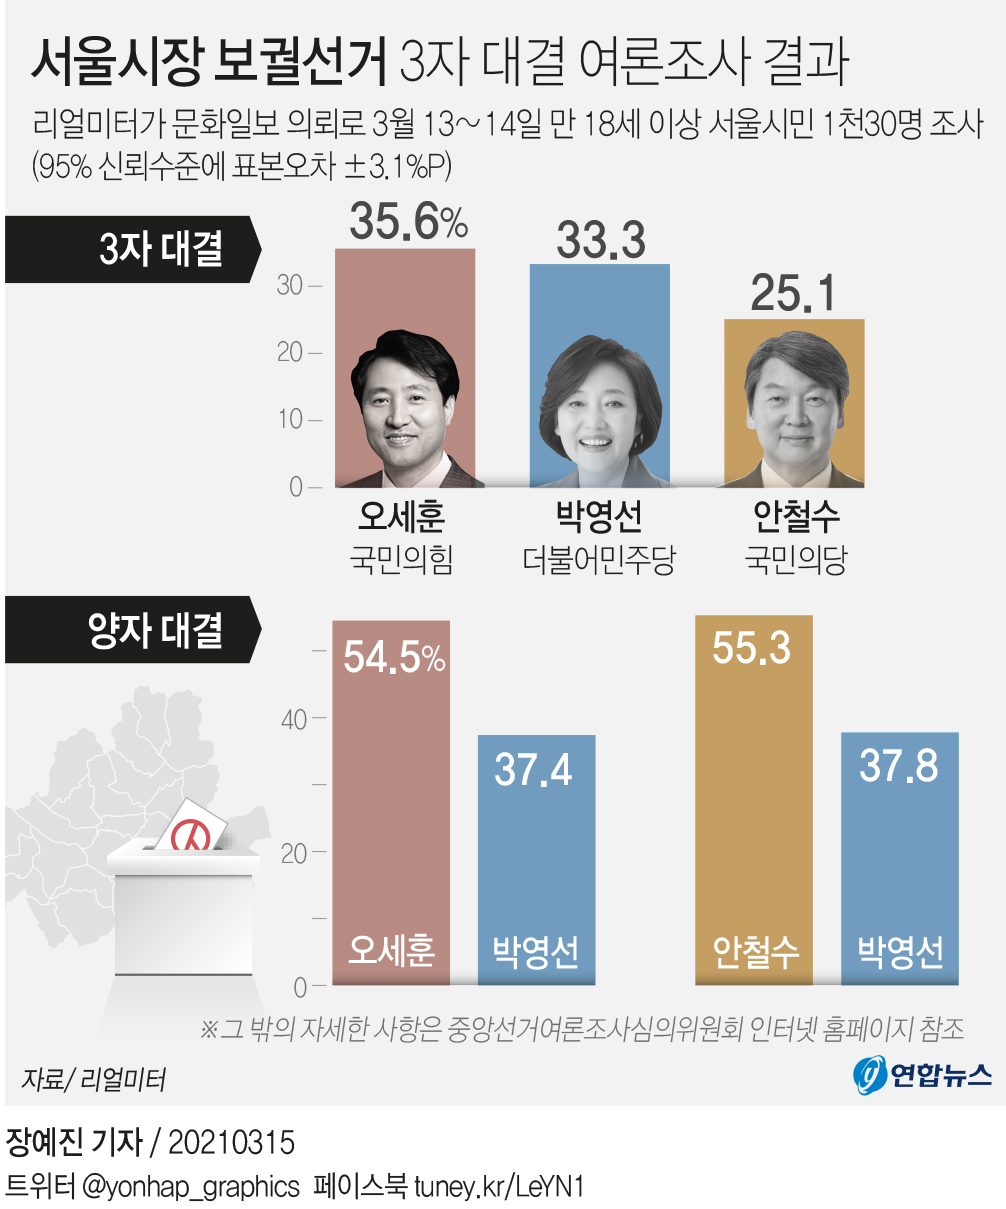 [그래픽] 서울시장 보궐선거 3자 대결 여론조사 결과